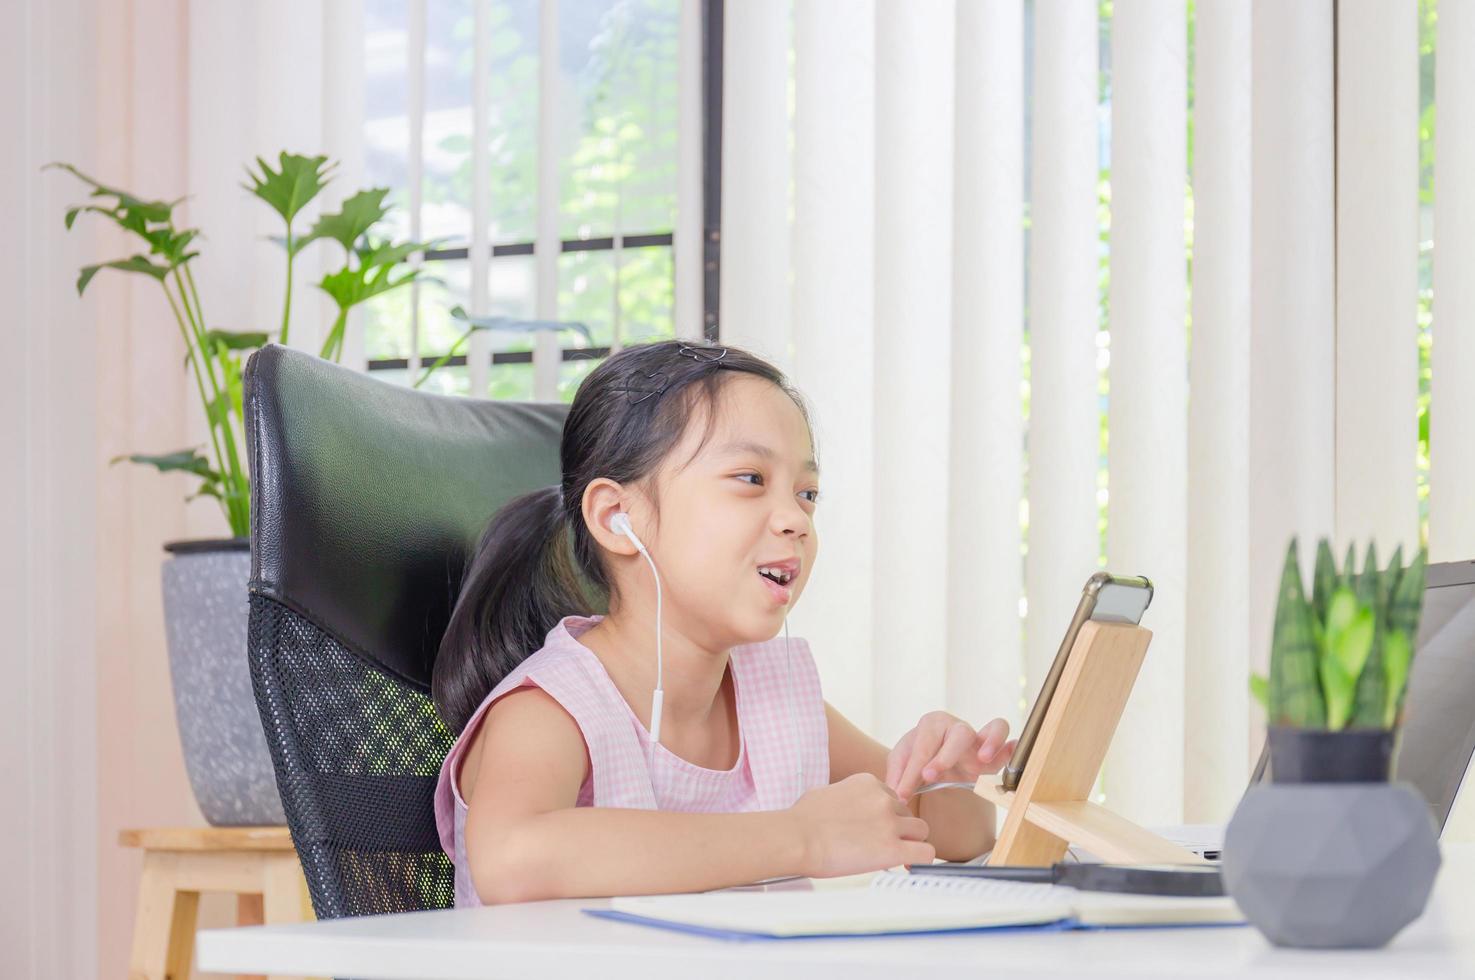 bambina allegra sorridente e mentre utilizza laptop e auricolare wireless per videochiamate, istruzione e concetto di apprendimento a distanza foto